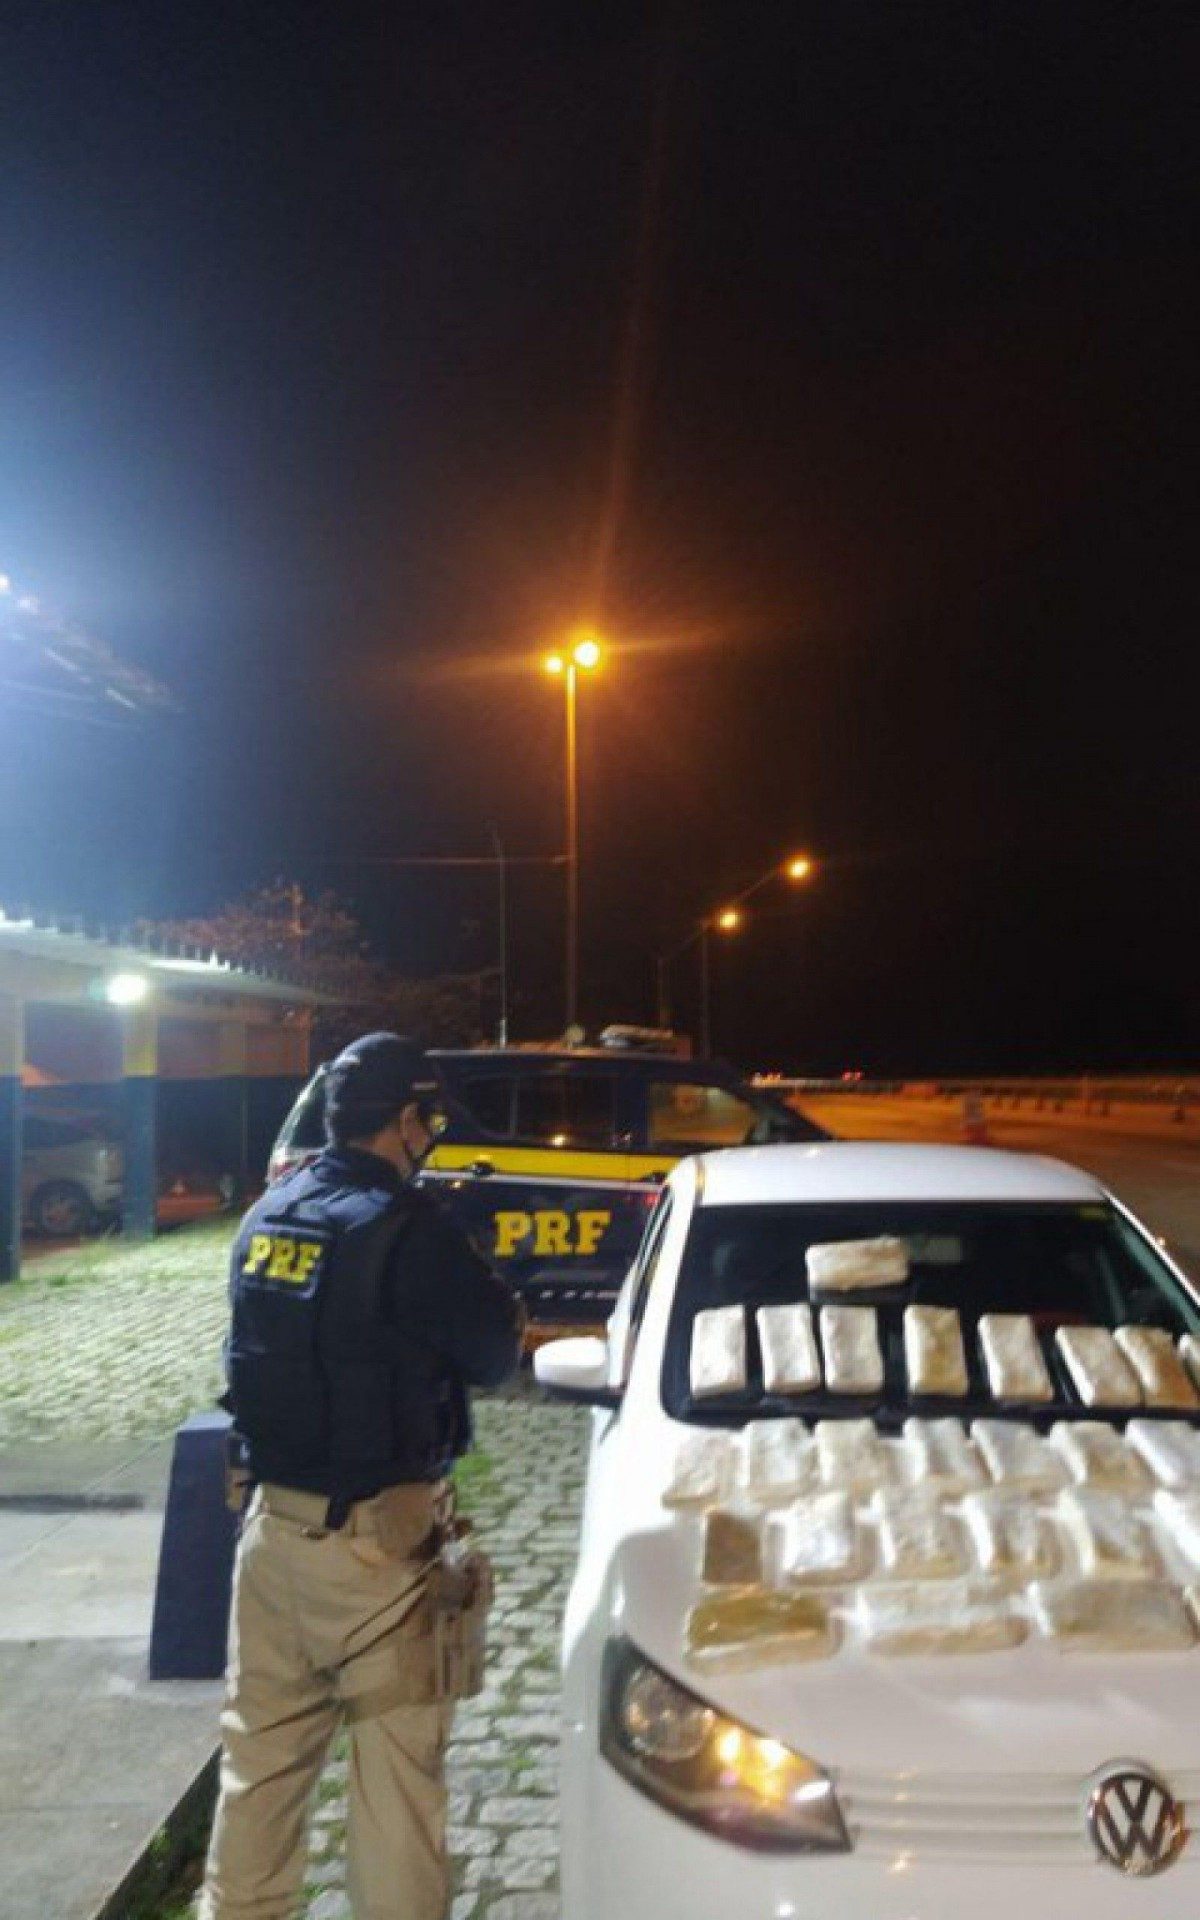 Agentes da PFR apreenderam cerca de R$ 3,5 milhões em pasta base de cocaína - Divulgação